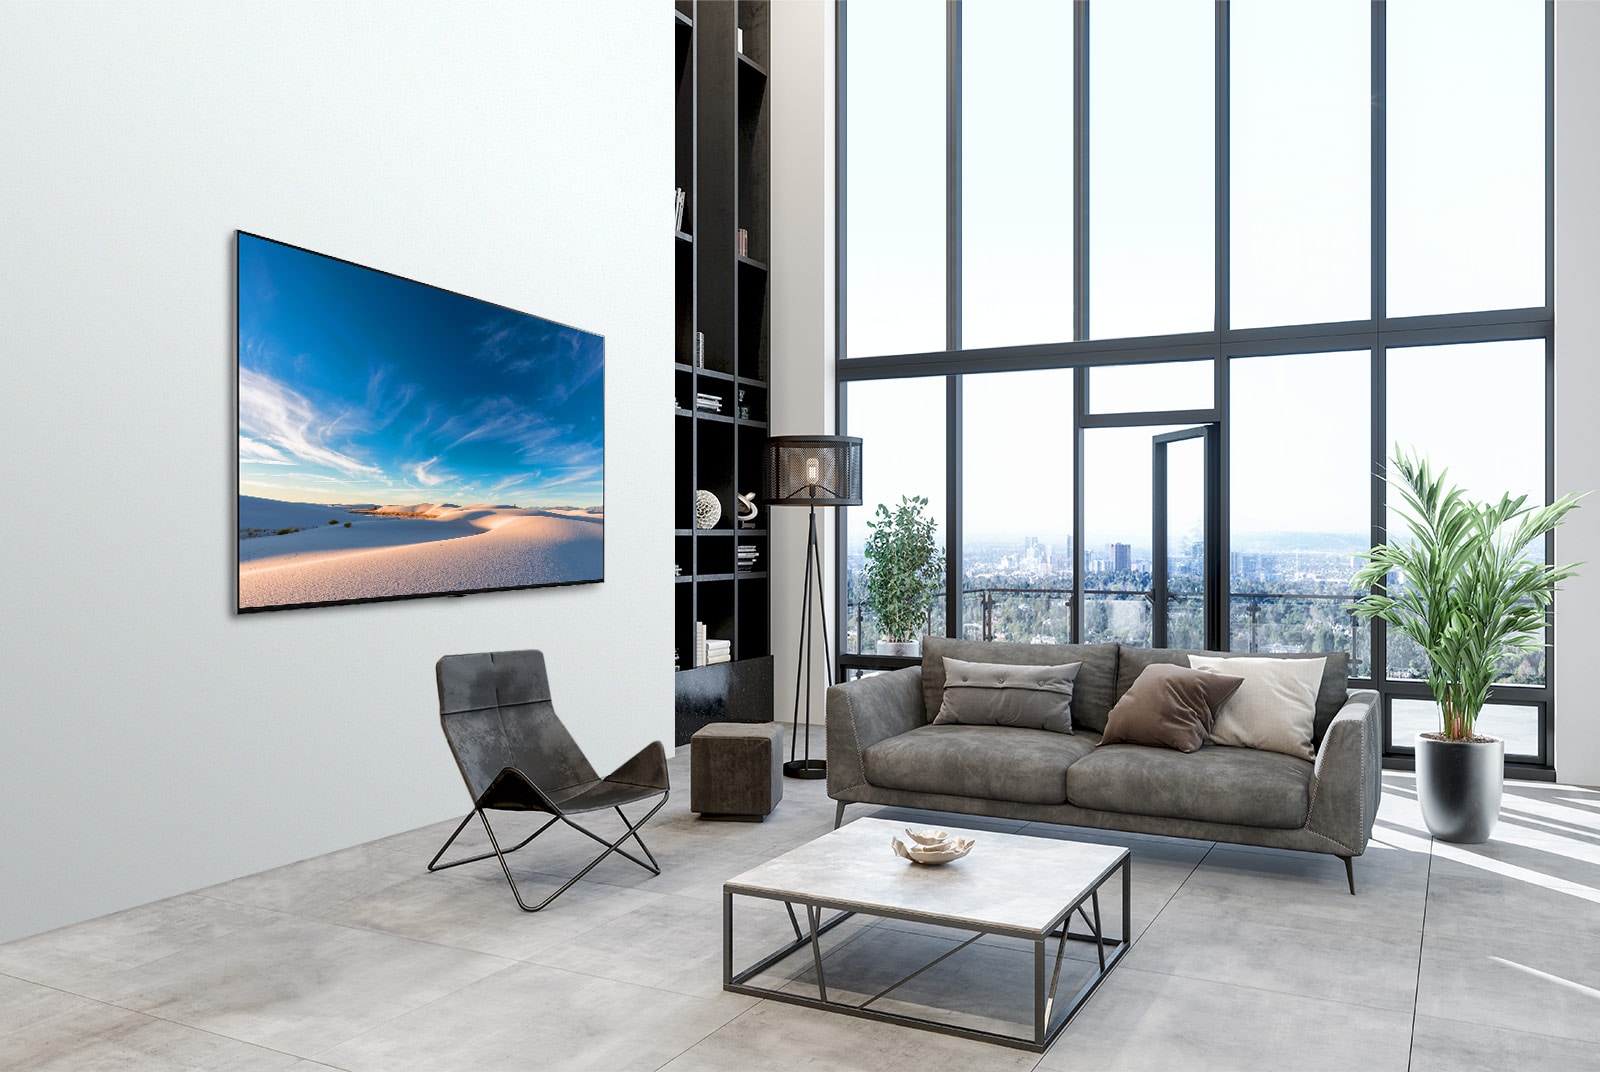 Телевизор LG QNED плотно прилегает к стене в современном интерьере.